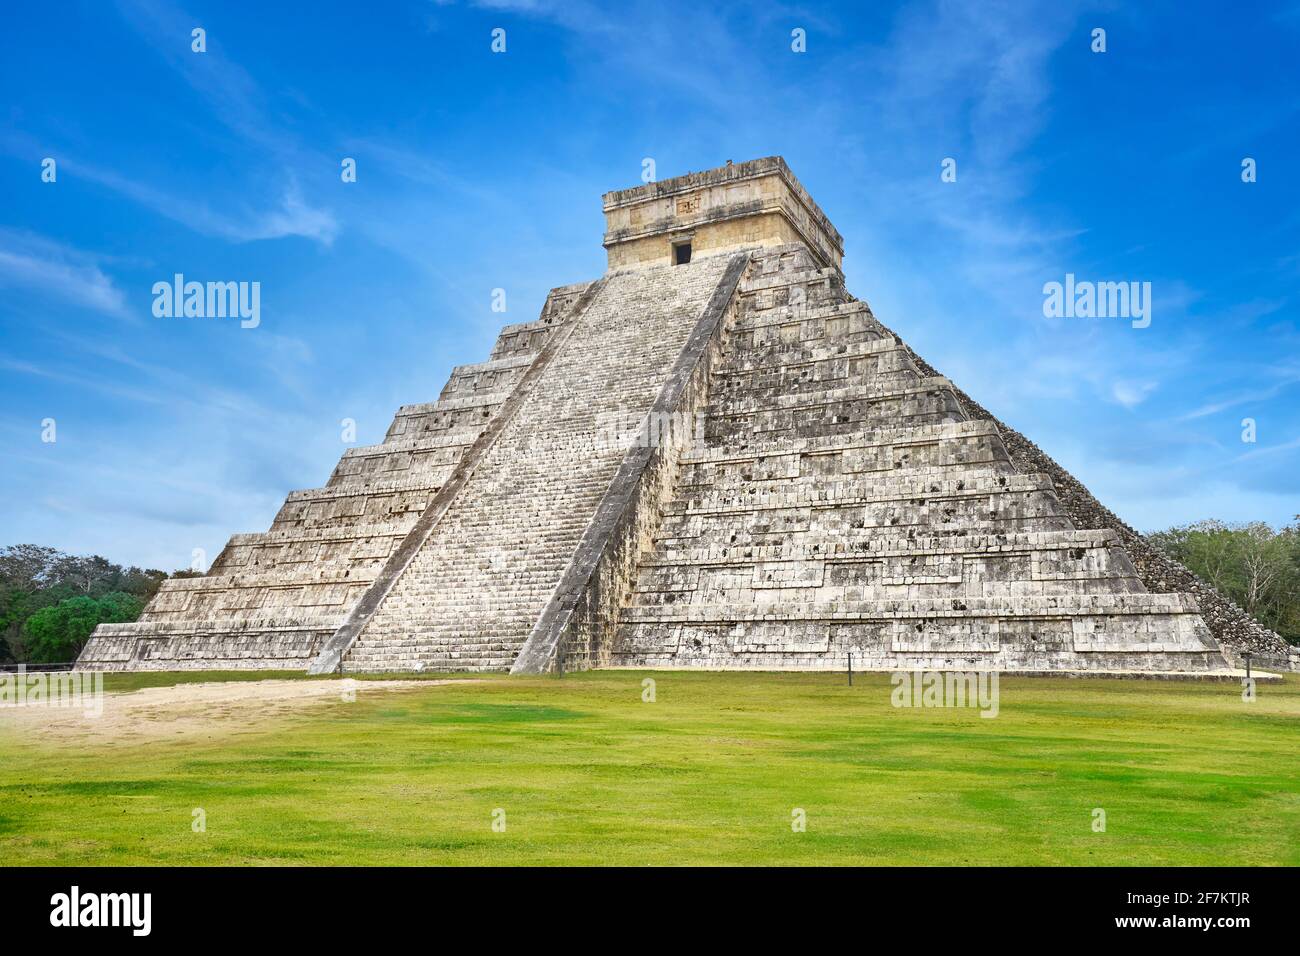 Pirámide del Templo Kukulkan, ruinas mayas antiguas, Chichén Itzá, Yucatán, México Foto de stock